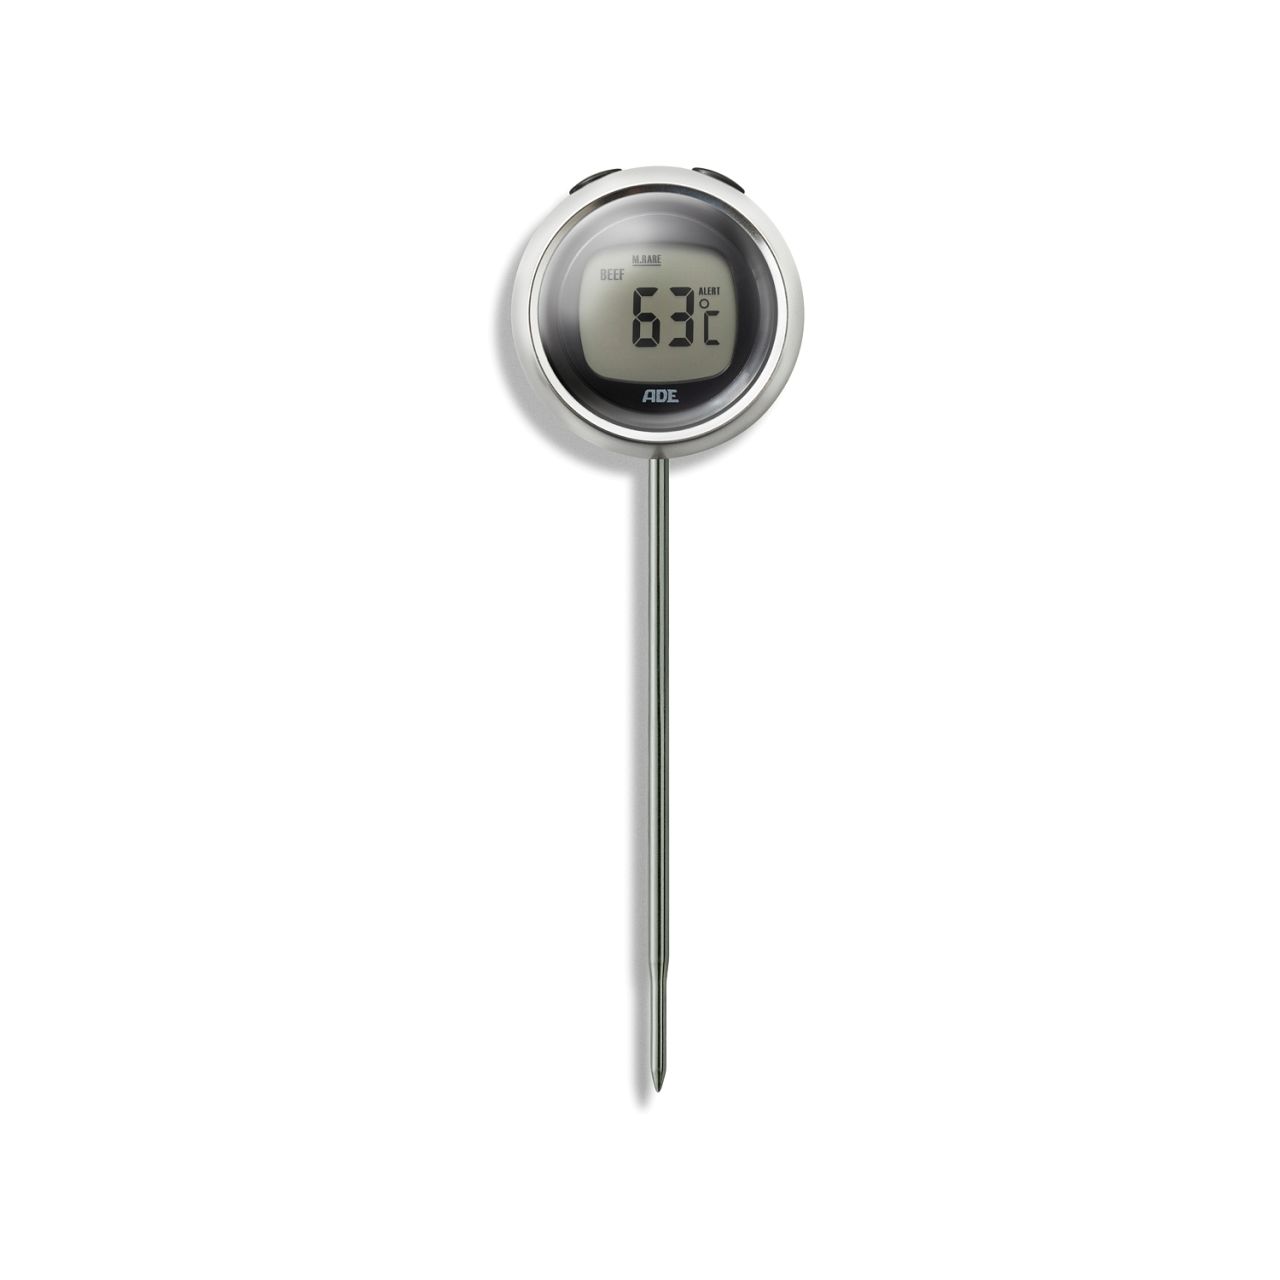 ADE Küchenthermometer BBQ 1302""